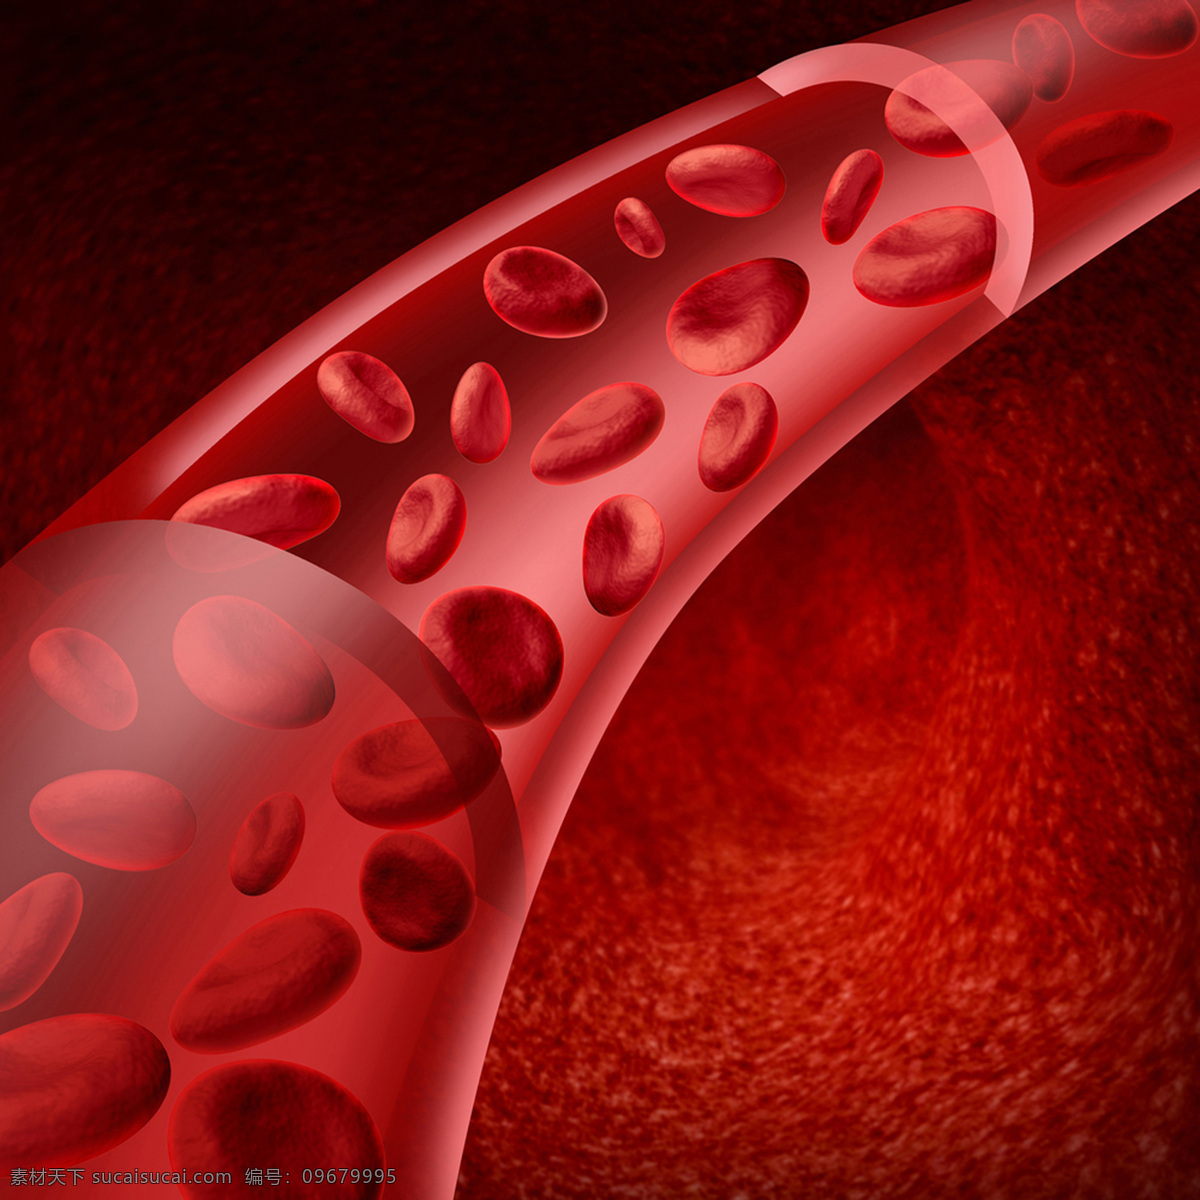 血管 里 红色 血小板 红色颗粒 红细胞 颗粒 分子 成分 3d 立体 分子细胞 细胞 医疗 保健 医学 医学研究 治病 病理 健康 医学素材 医疗研究 共享素材 现代科技 医疗护理